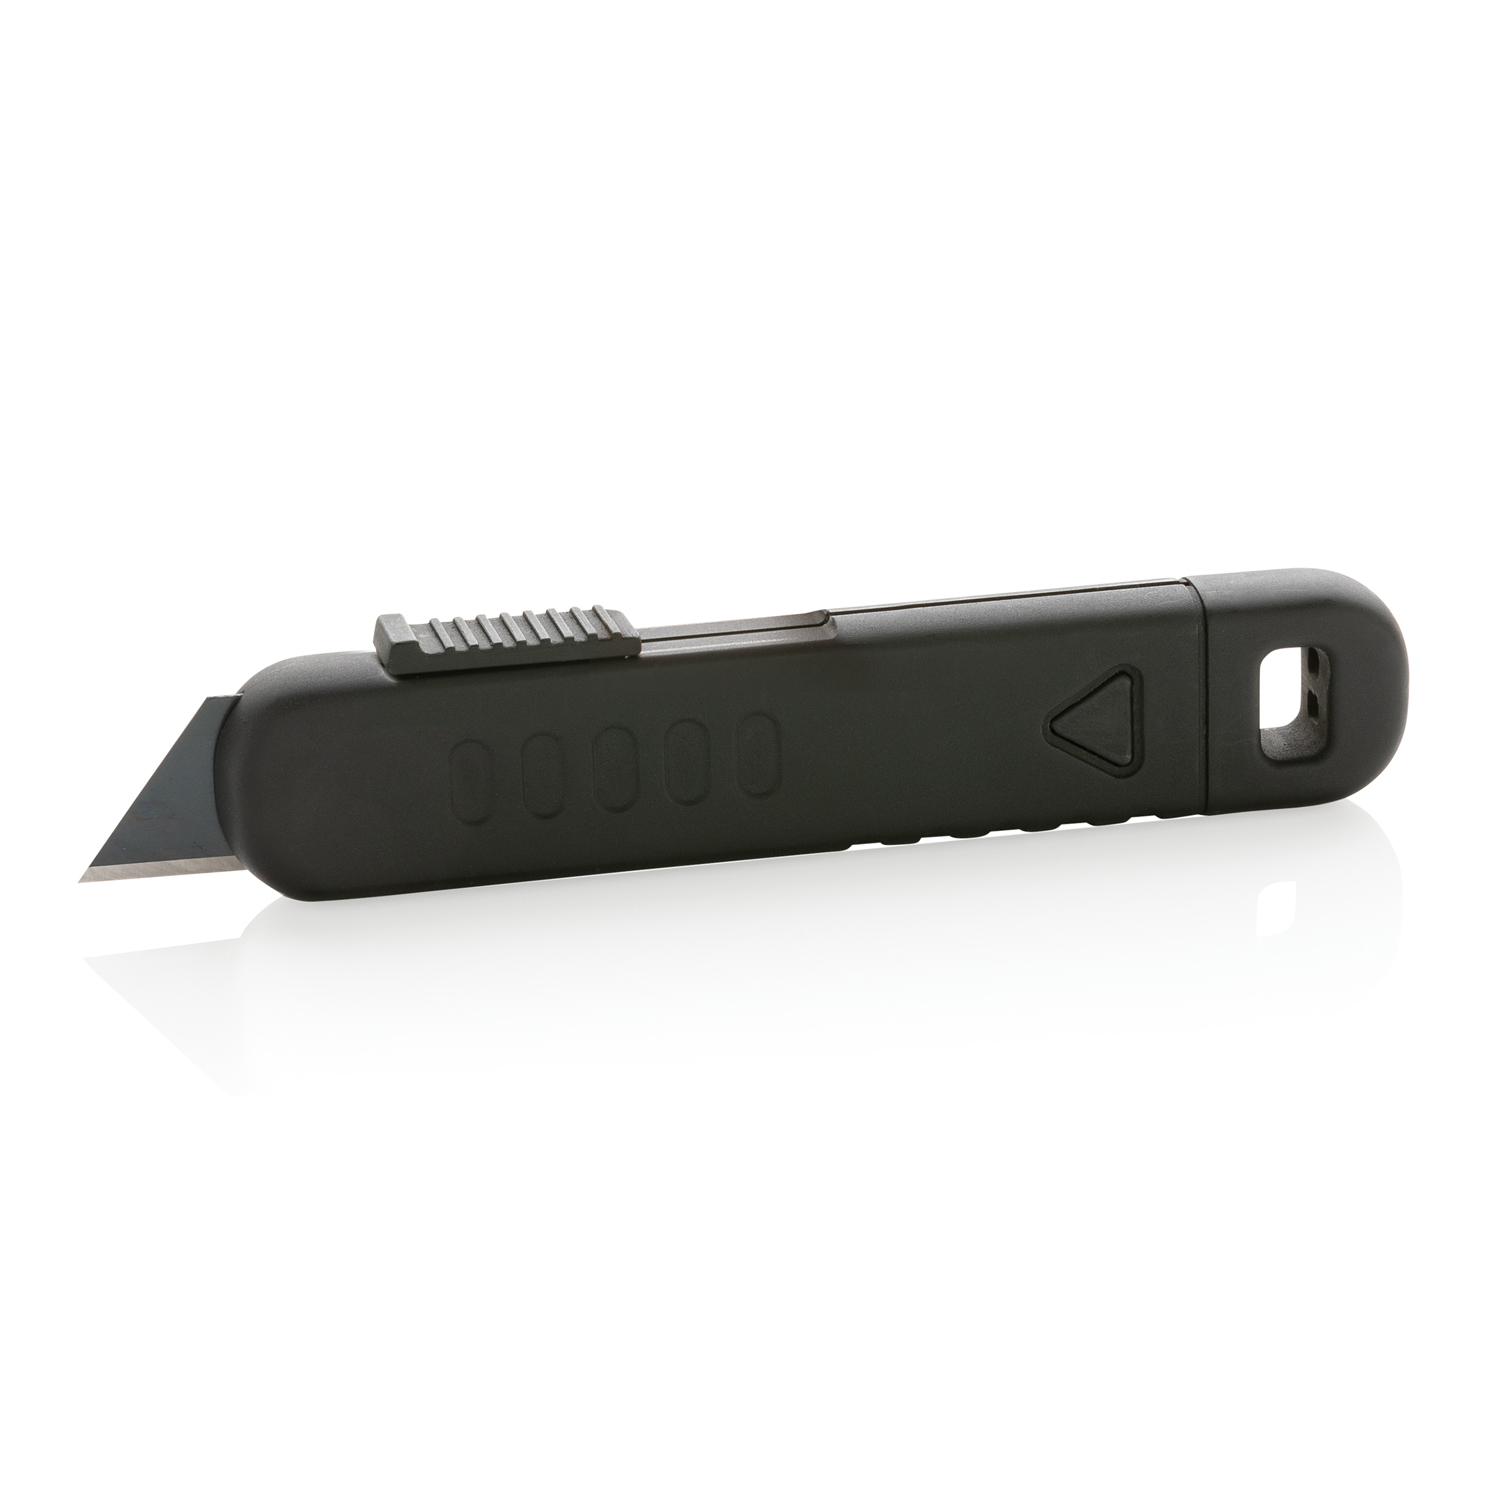 Артикул: XP215.141 — Безопасный строительный нож для посылок